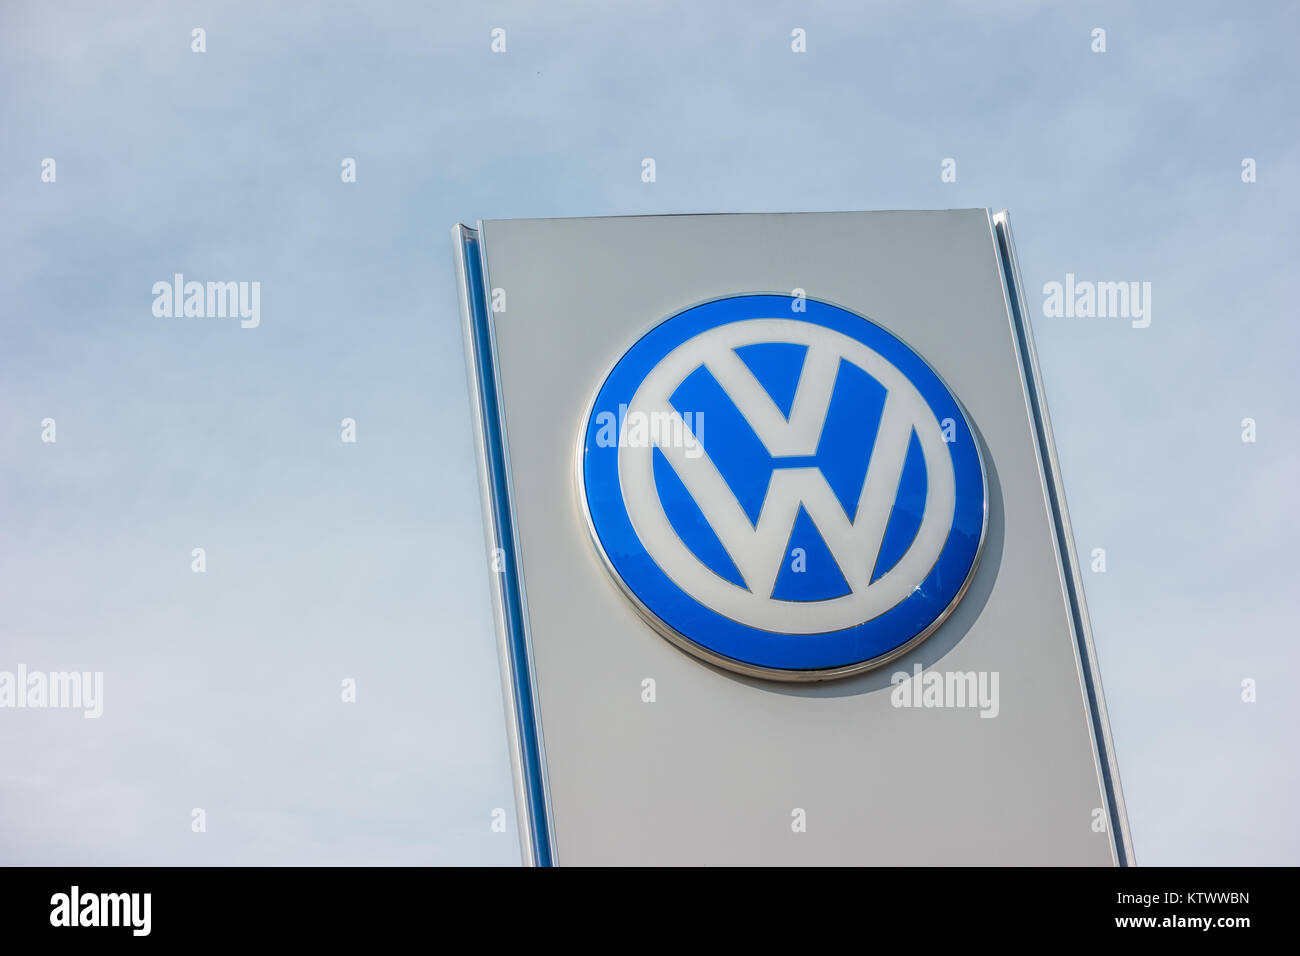 Signe Volkswagen contre ciel nuageux. Volkswagen est le plus grand constructeur automobile allemand et le troisième plus grand constructeur automobile dans le monde Banque D'Images